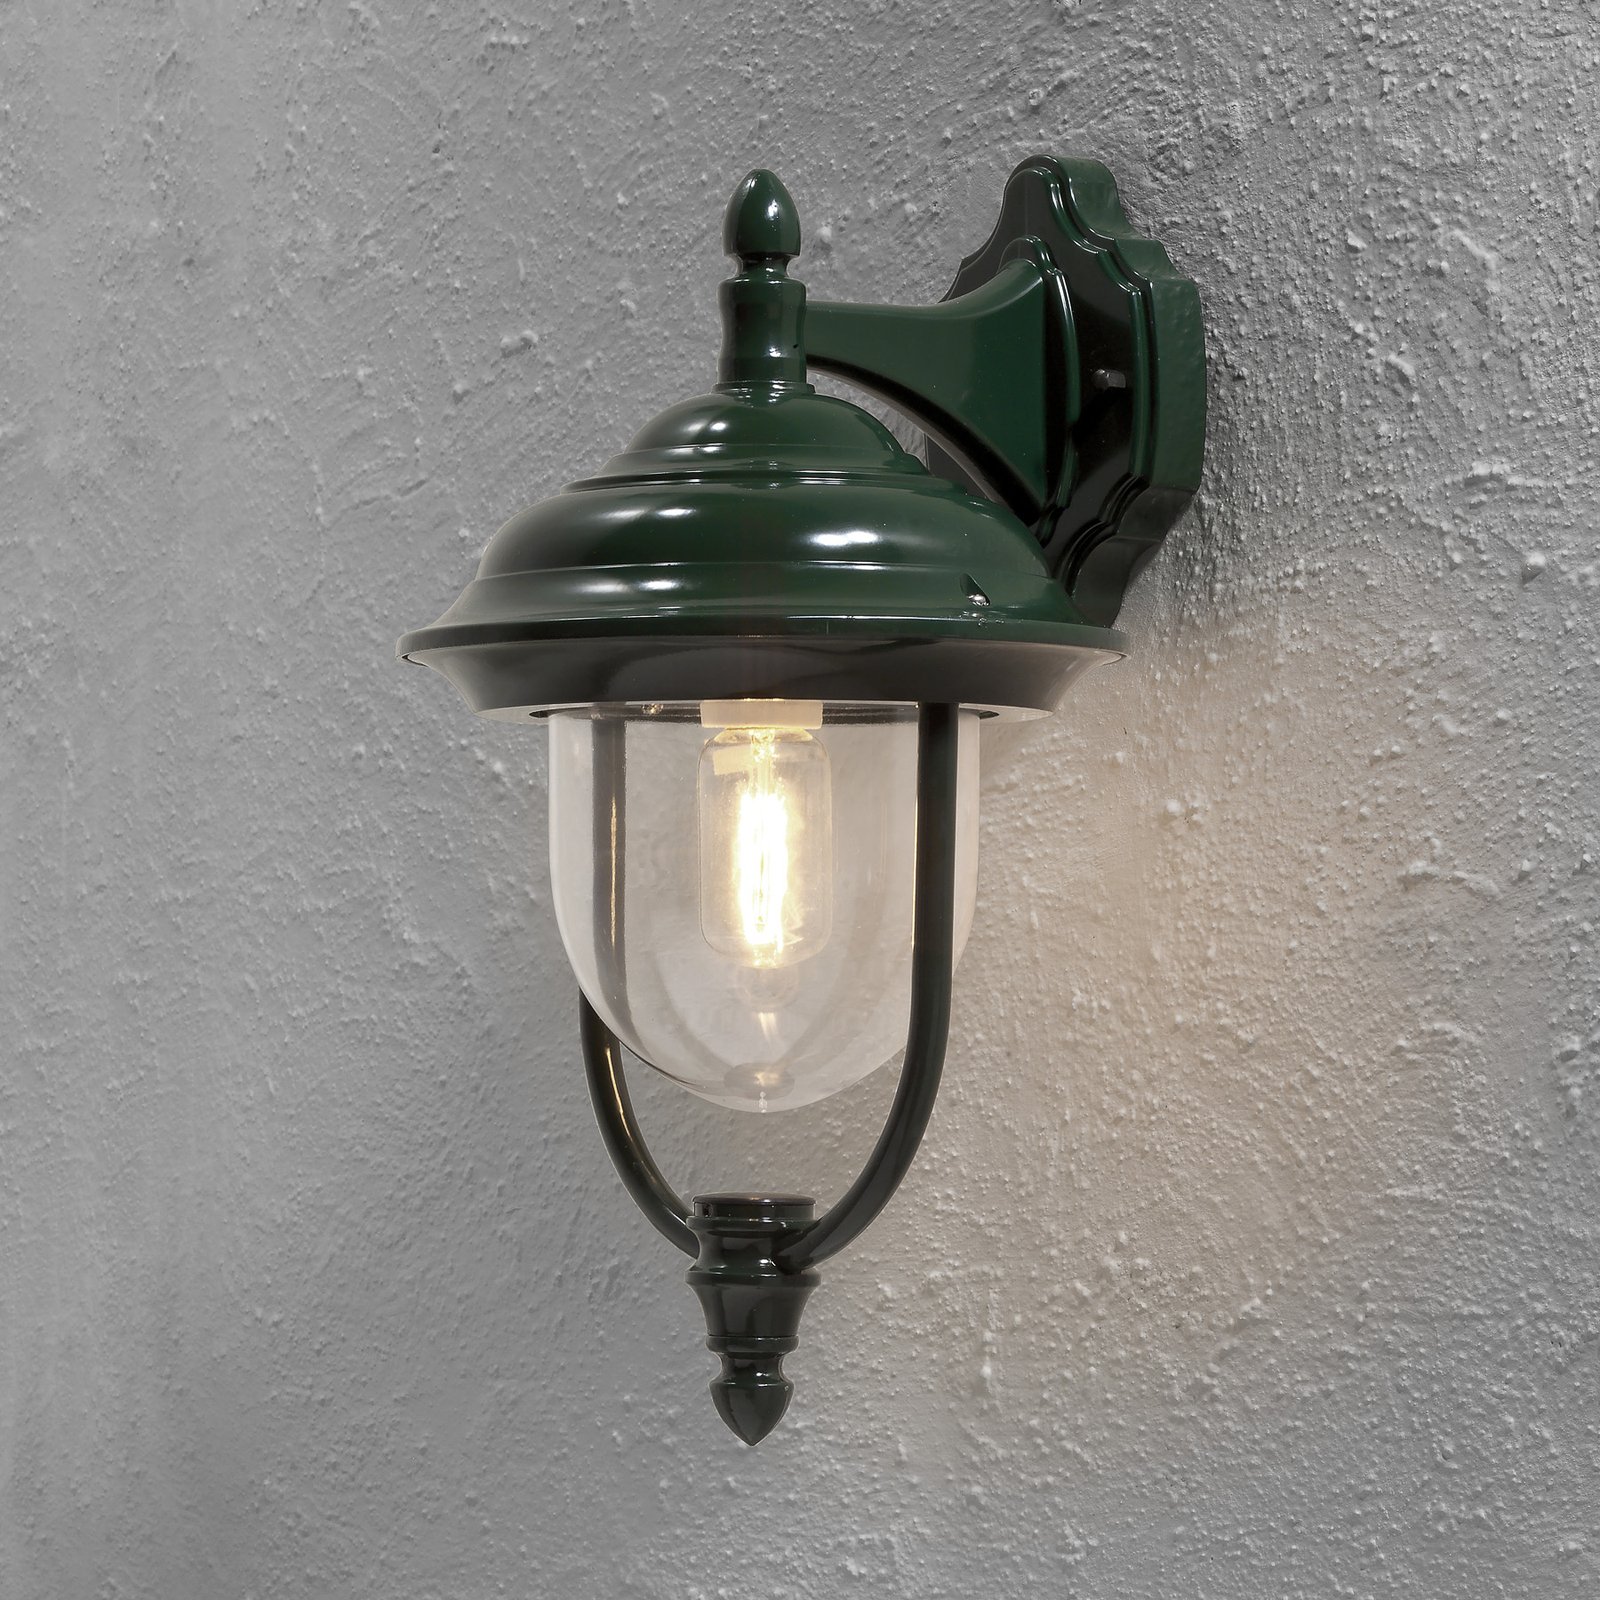 Enkel udendørs væglampe "Parma" - hængende, i grøn